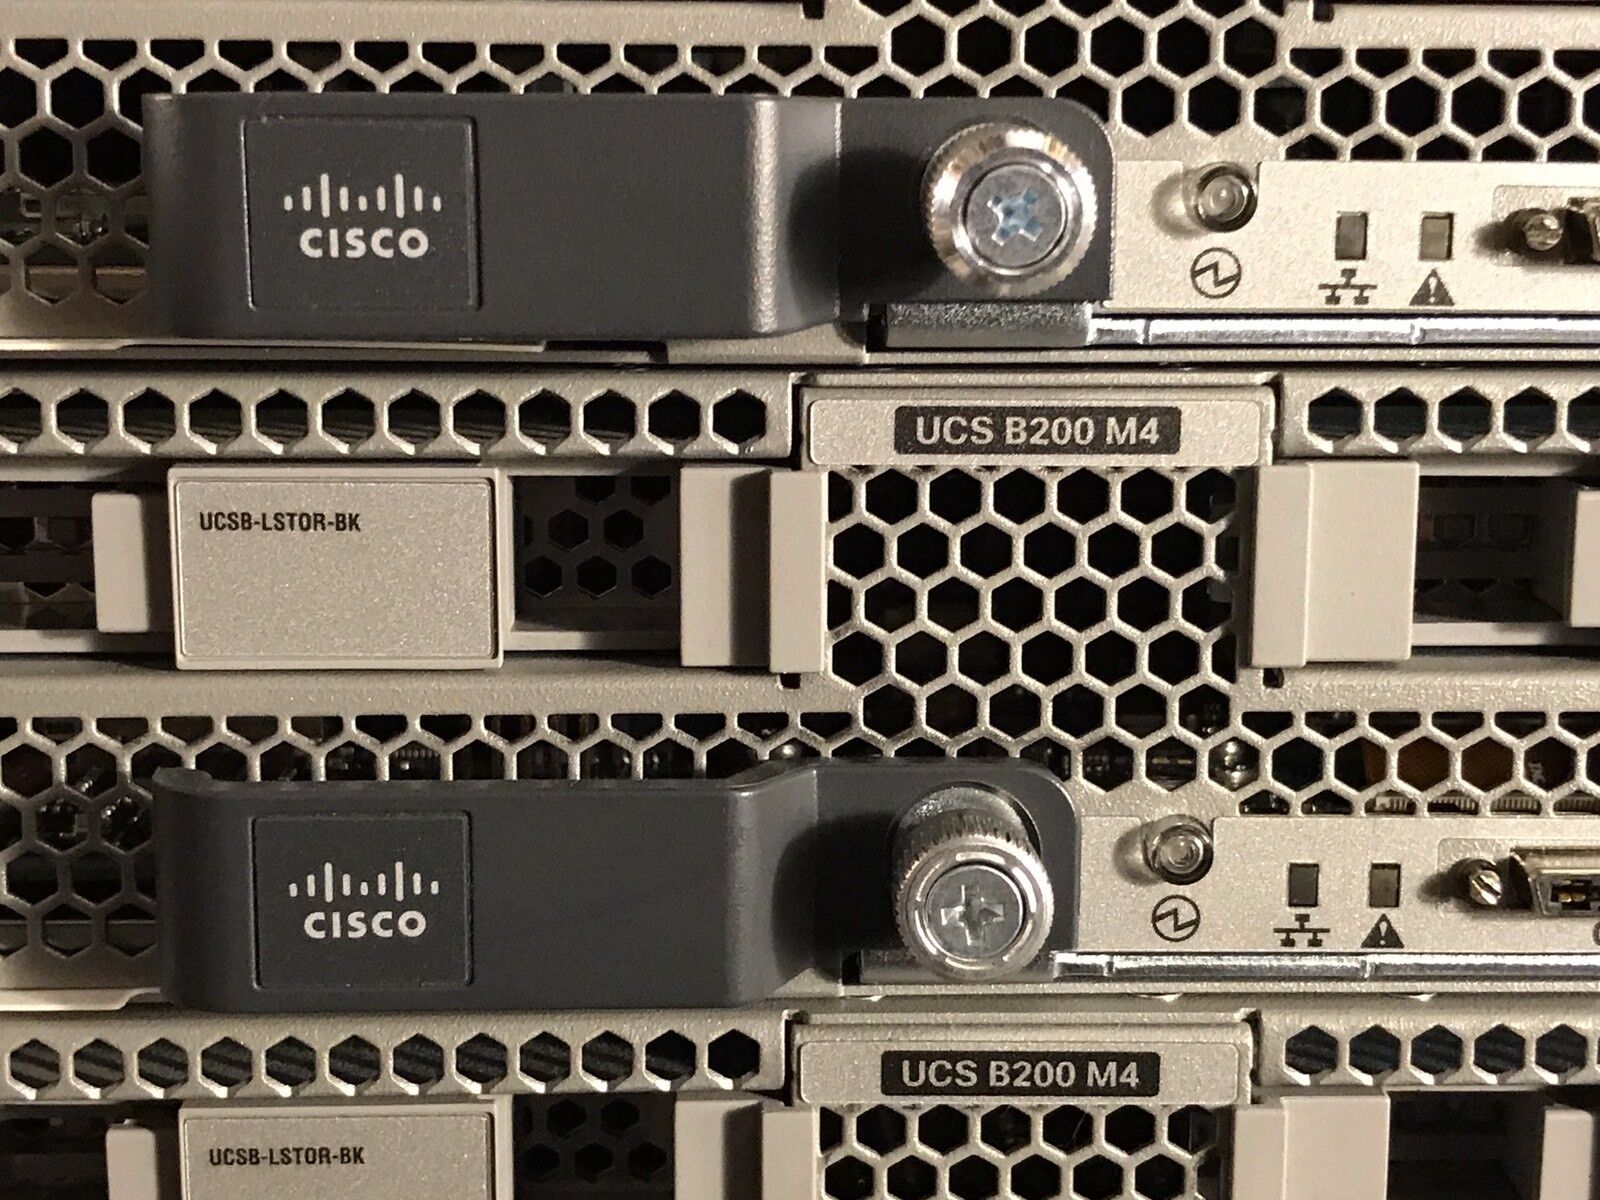 Cisco B200 M4 Two E5-2660V3 256GB Blade Server VIC1240 16x UCS-MR-1X162RU-A.